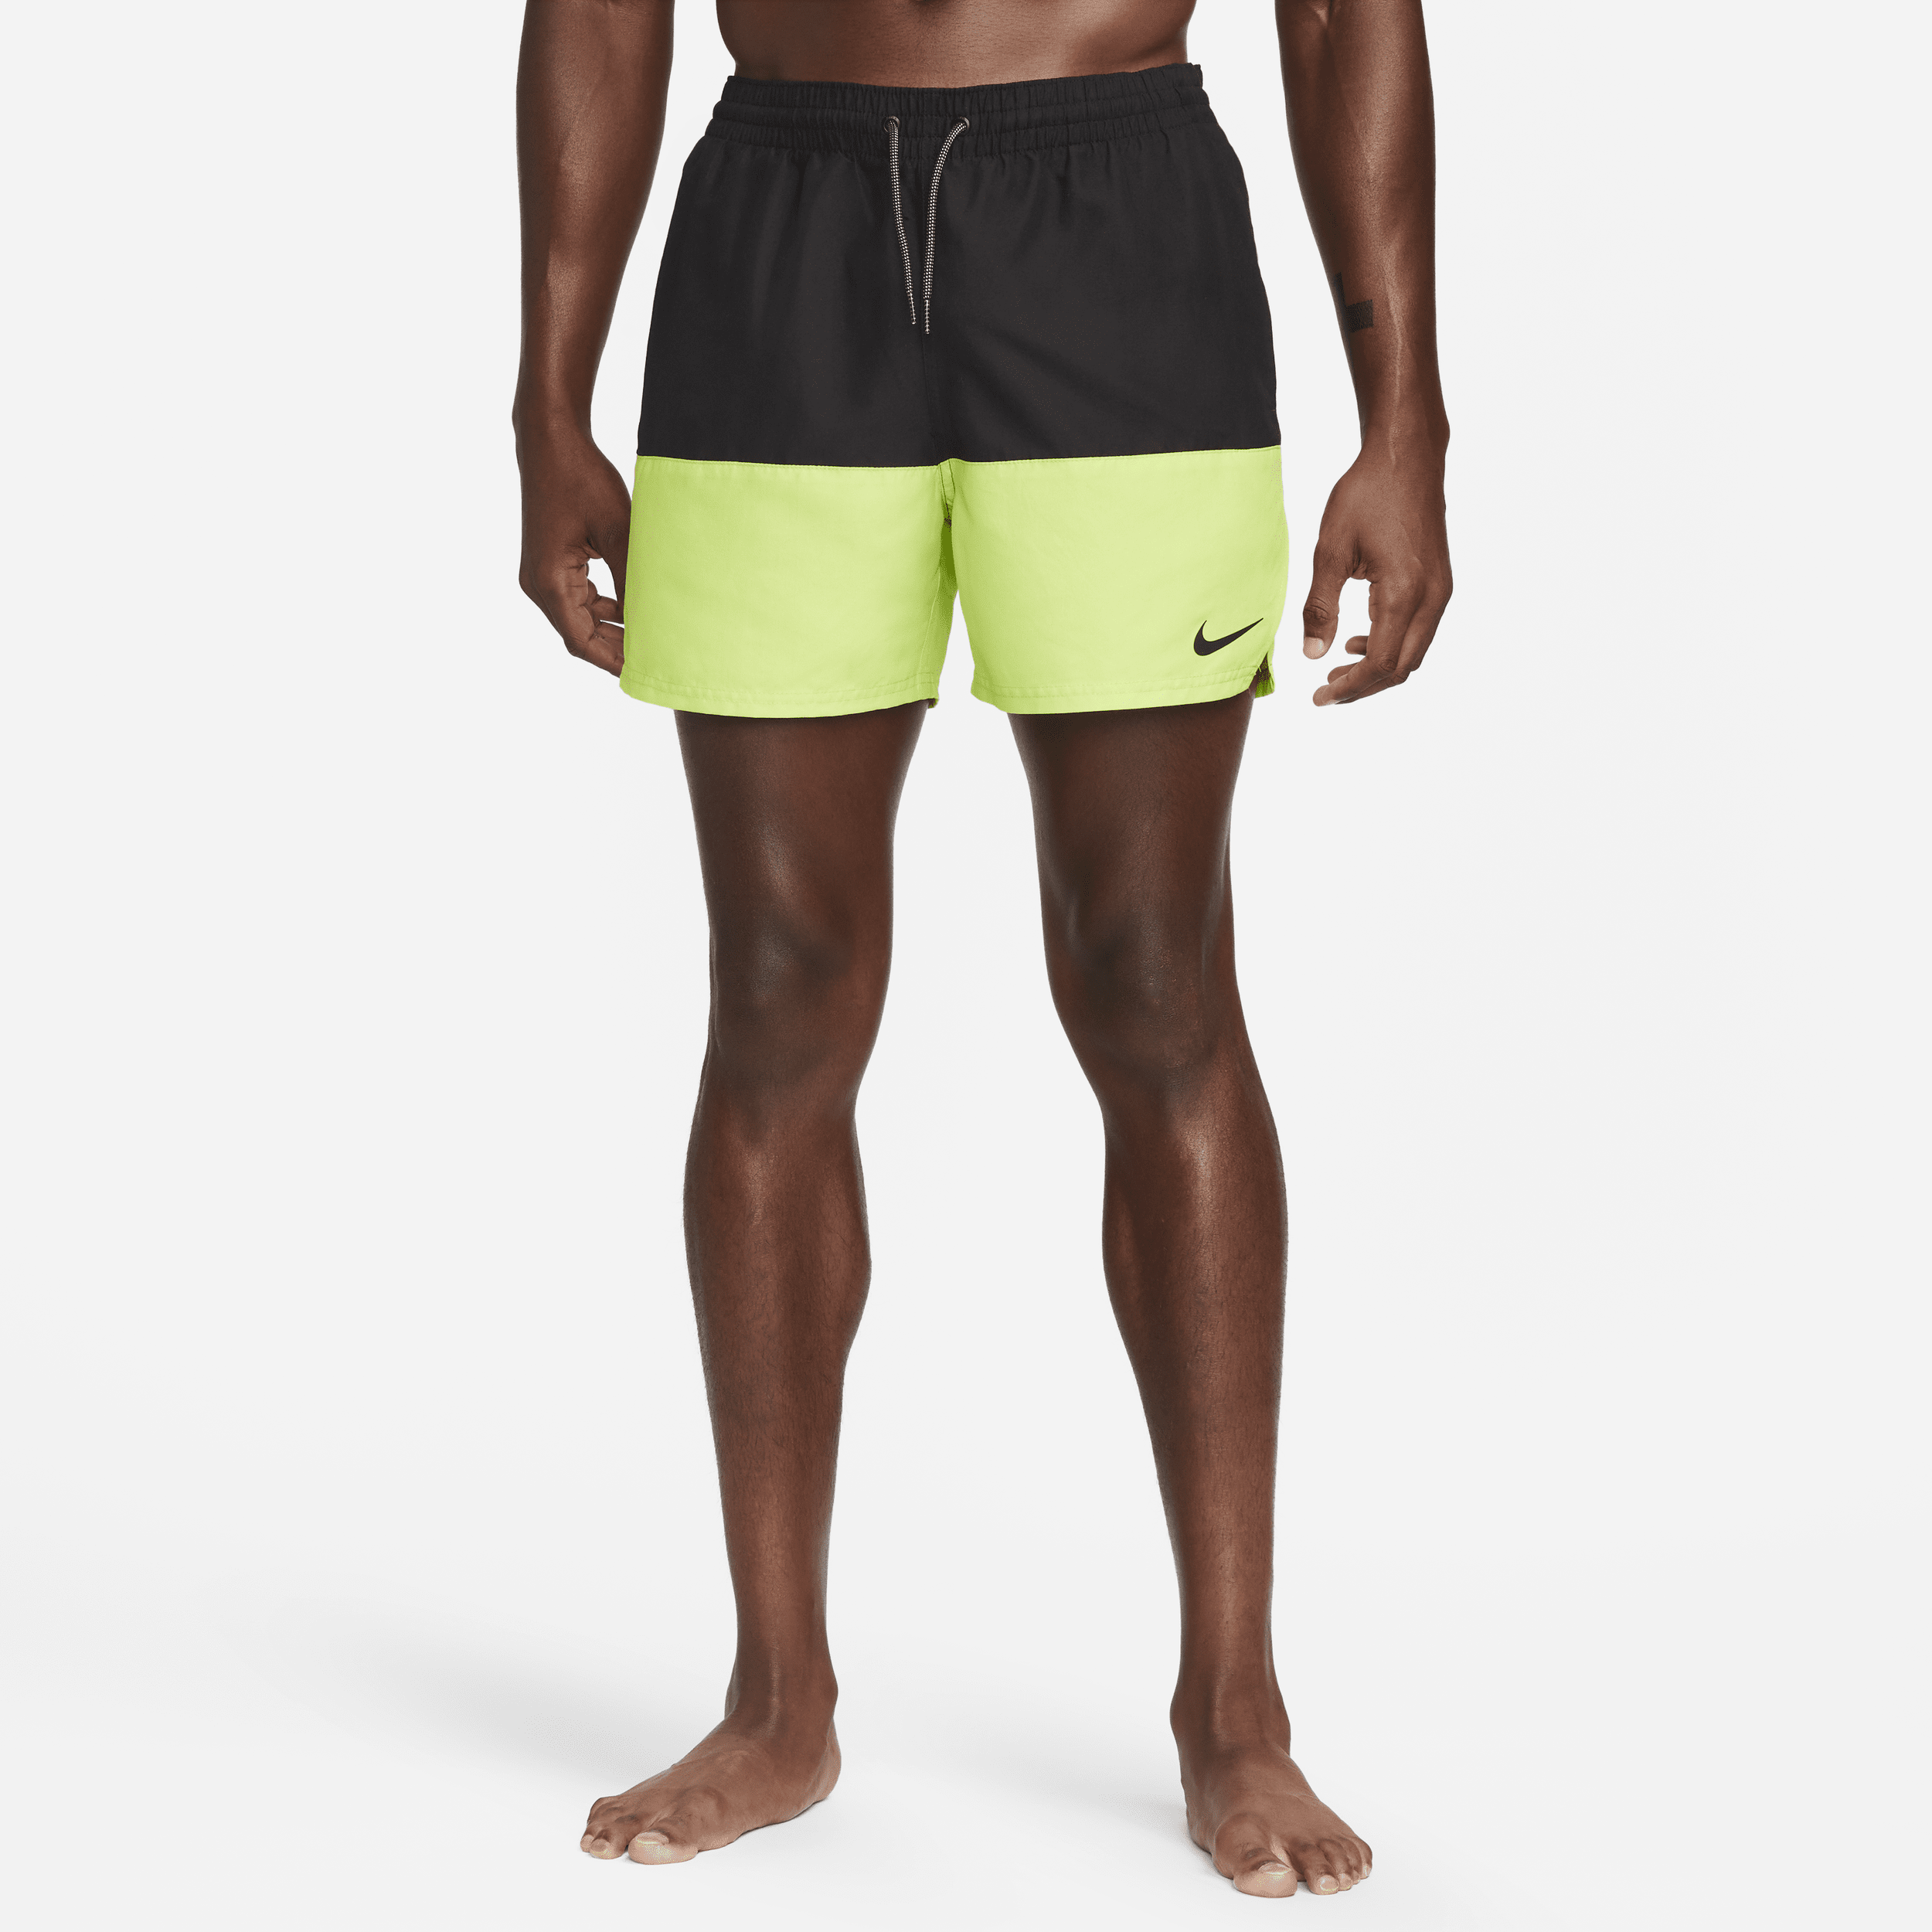 Nike Split-badebukser (13 cm) til mænd - grøn